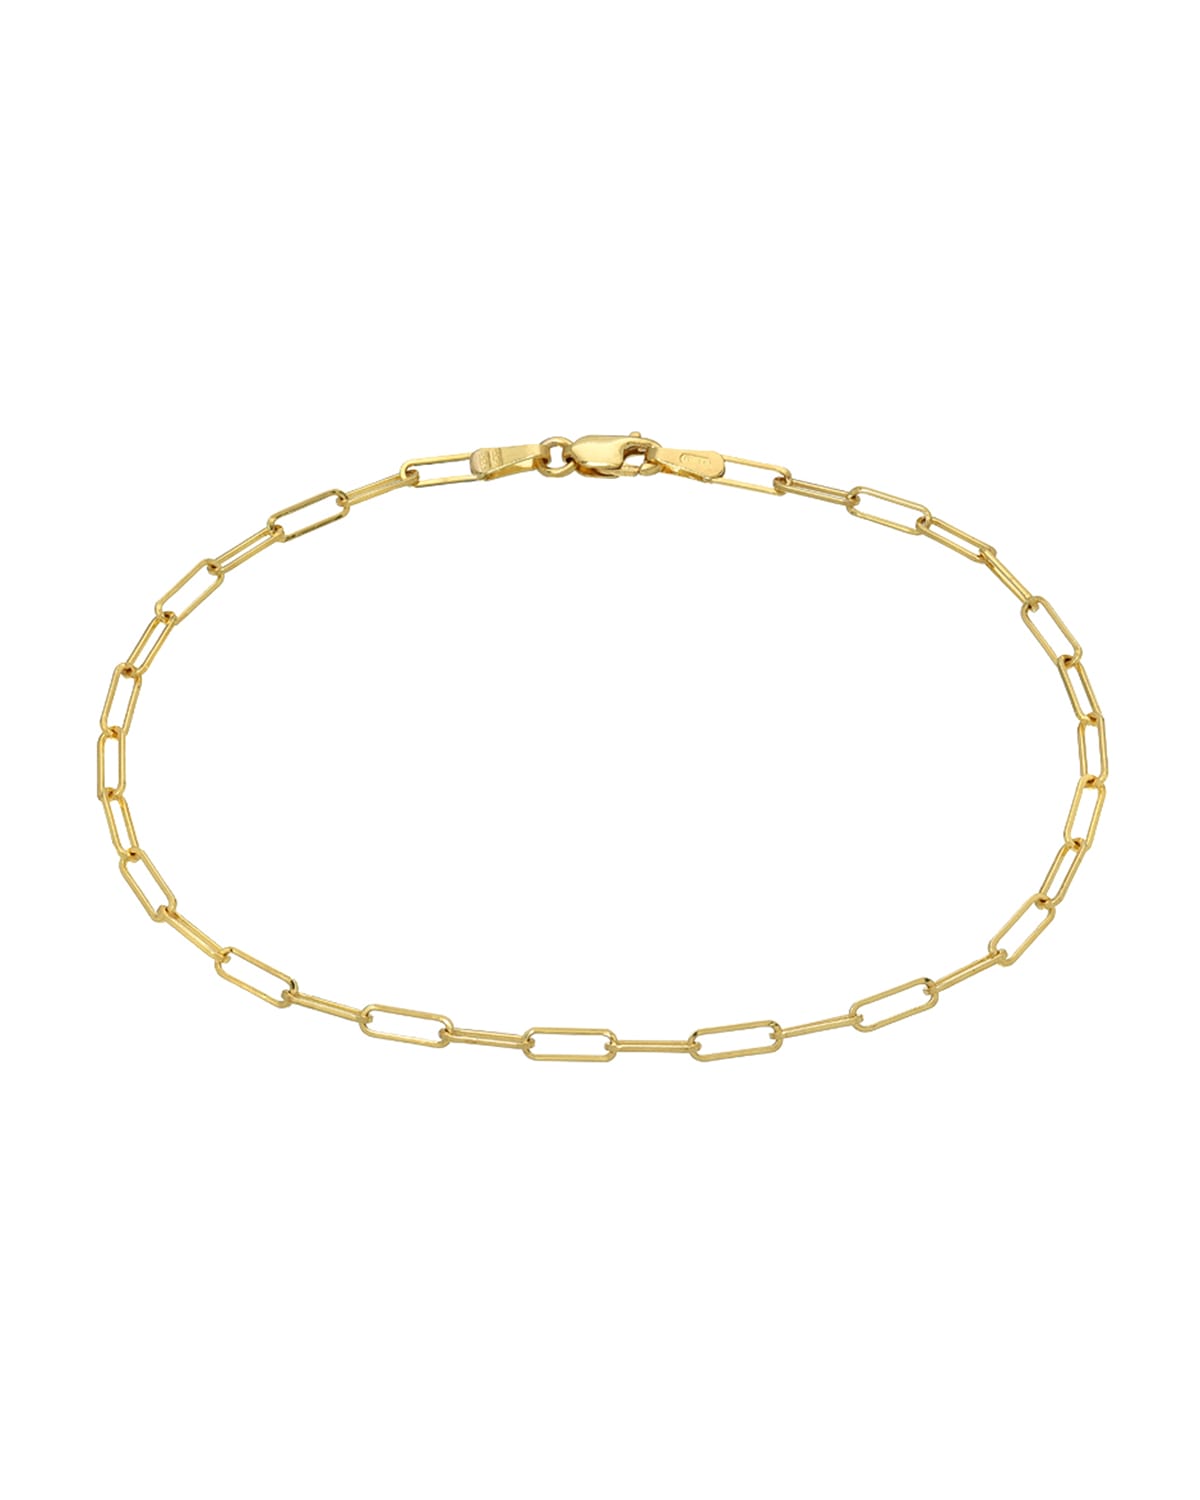 Zoe Lev Jewelry 14k Gold Open-Link Chain Bracelet